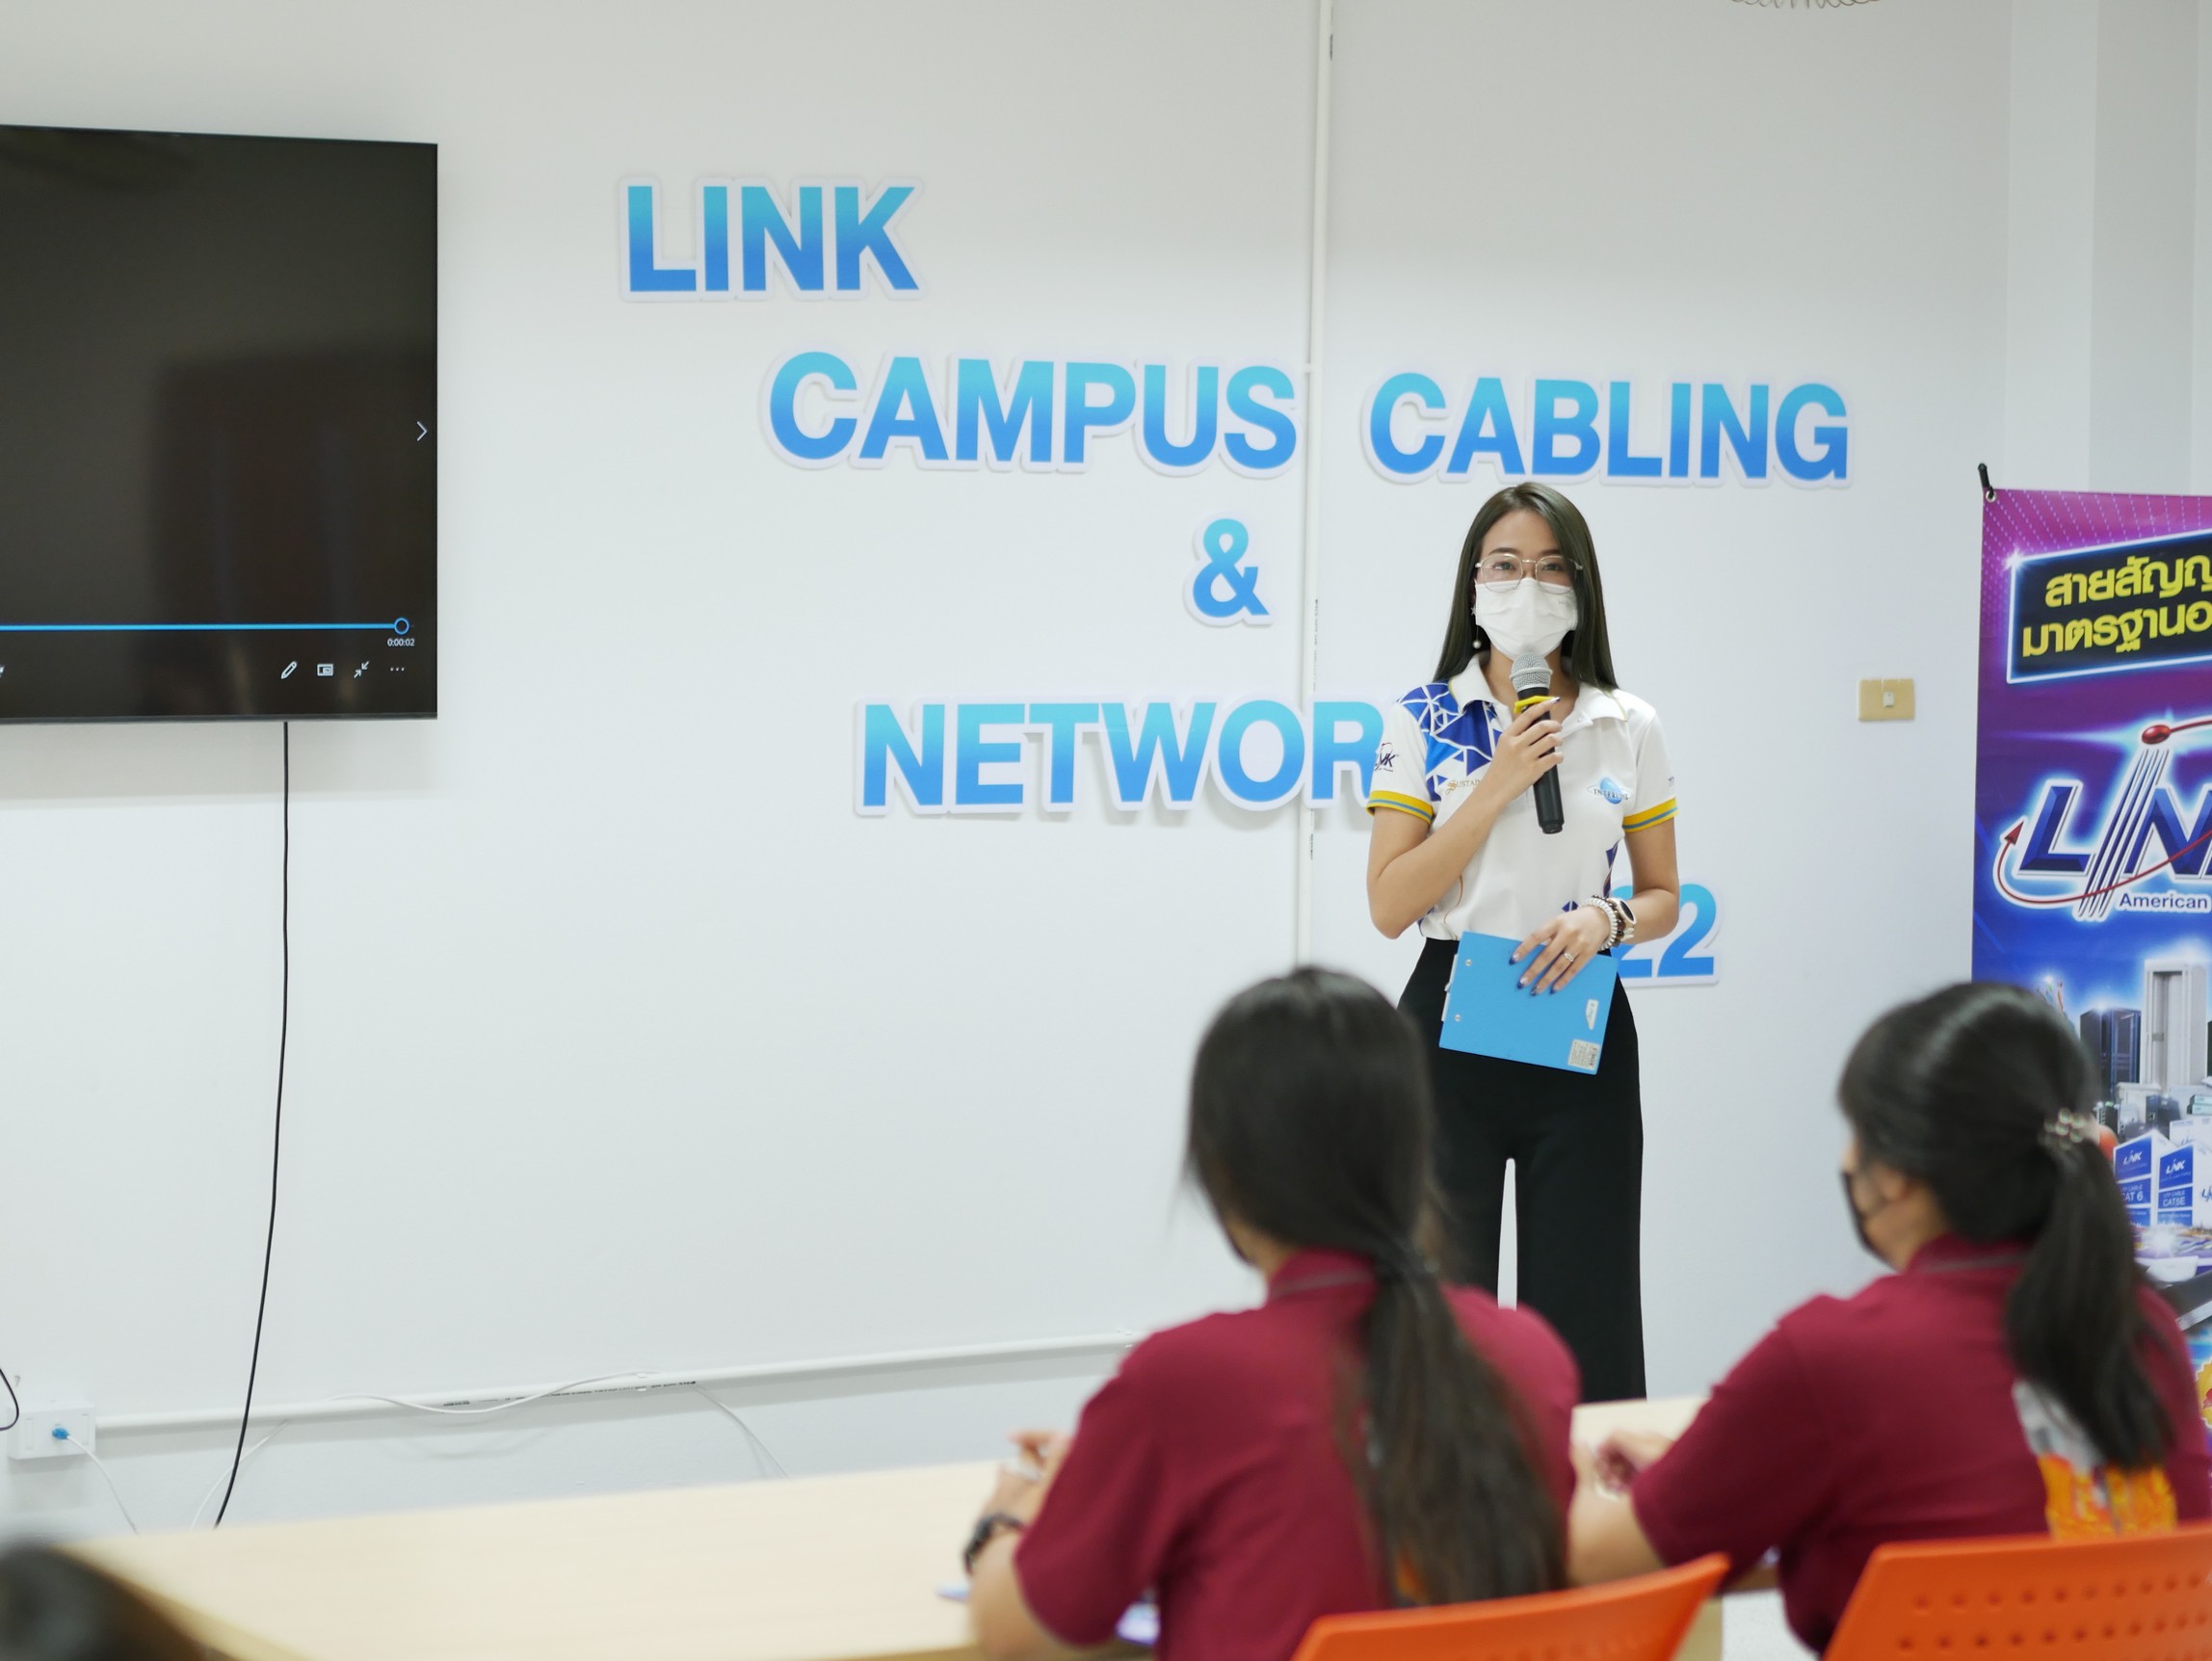 บริษัท Interlink ได้จัด workshop ในโครงการ LINK CAMPUS CABLING & NETWORKING